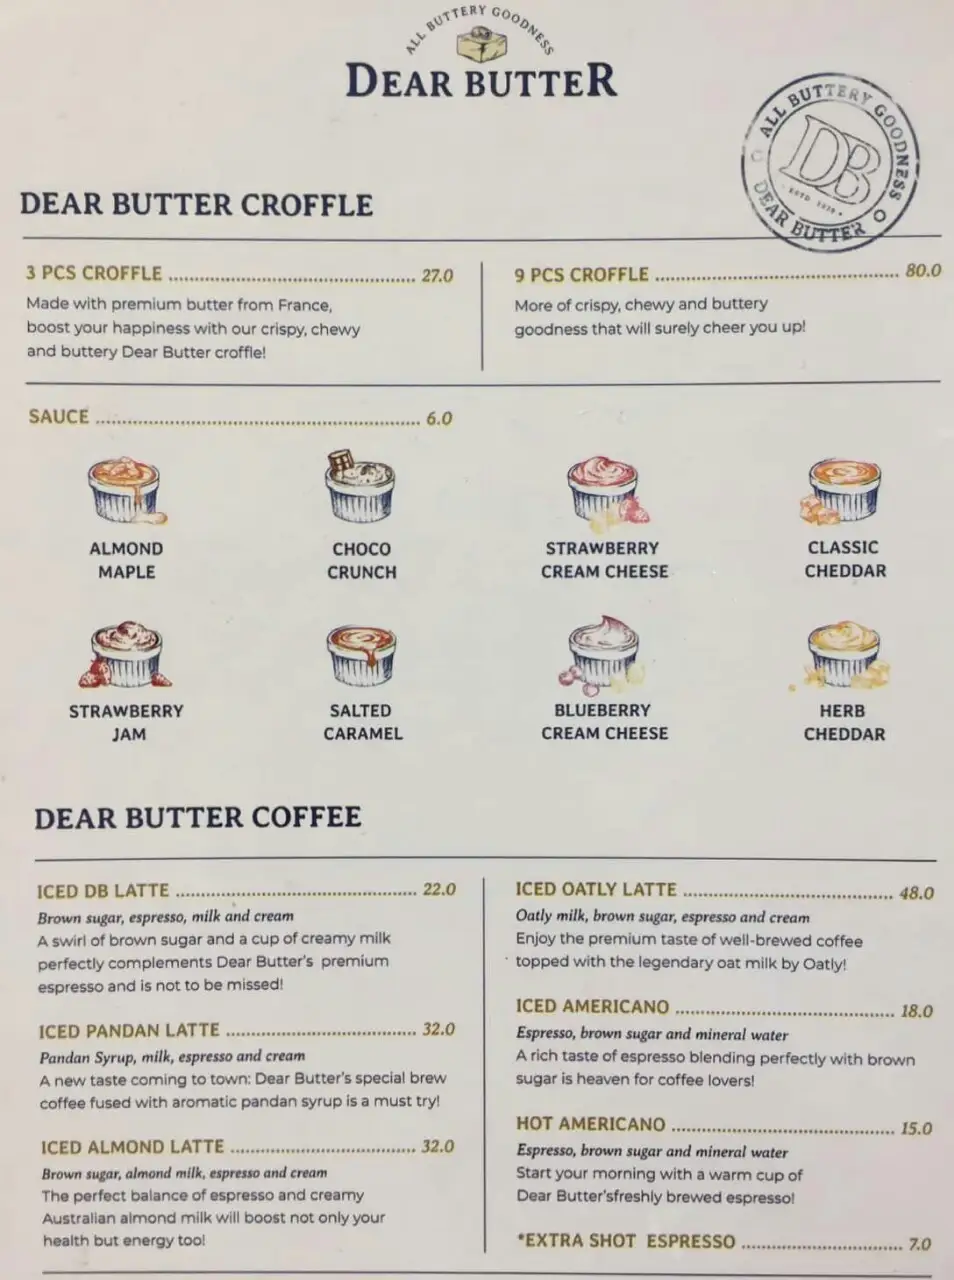 Dear Butter